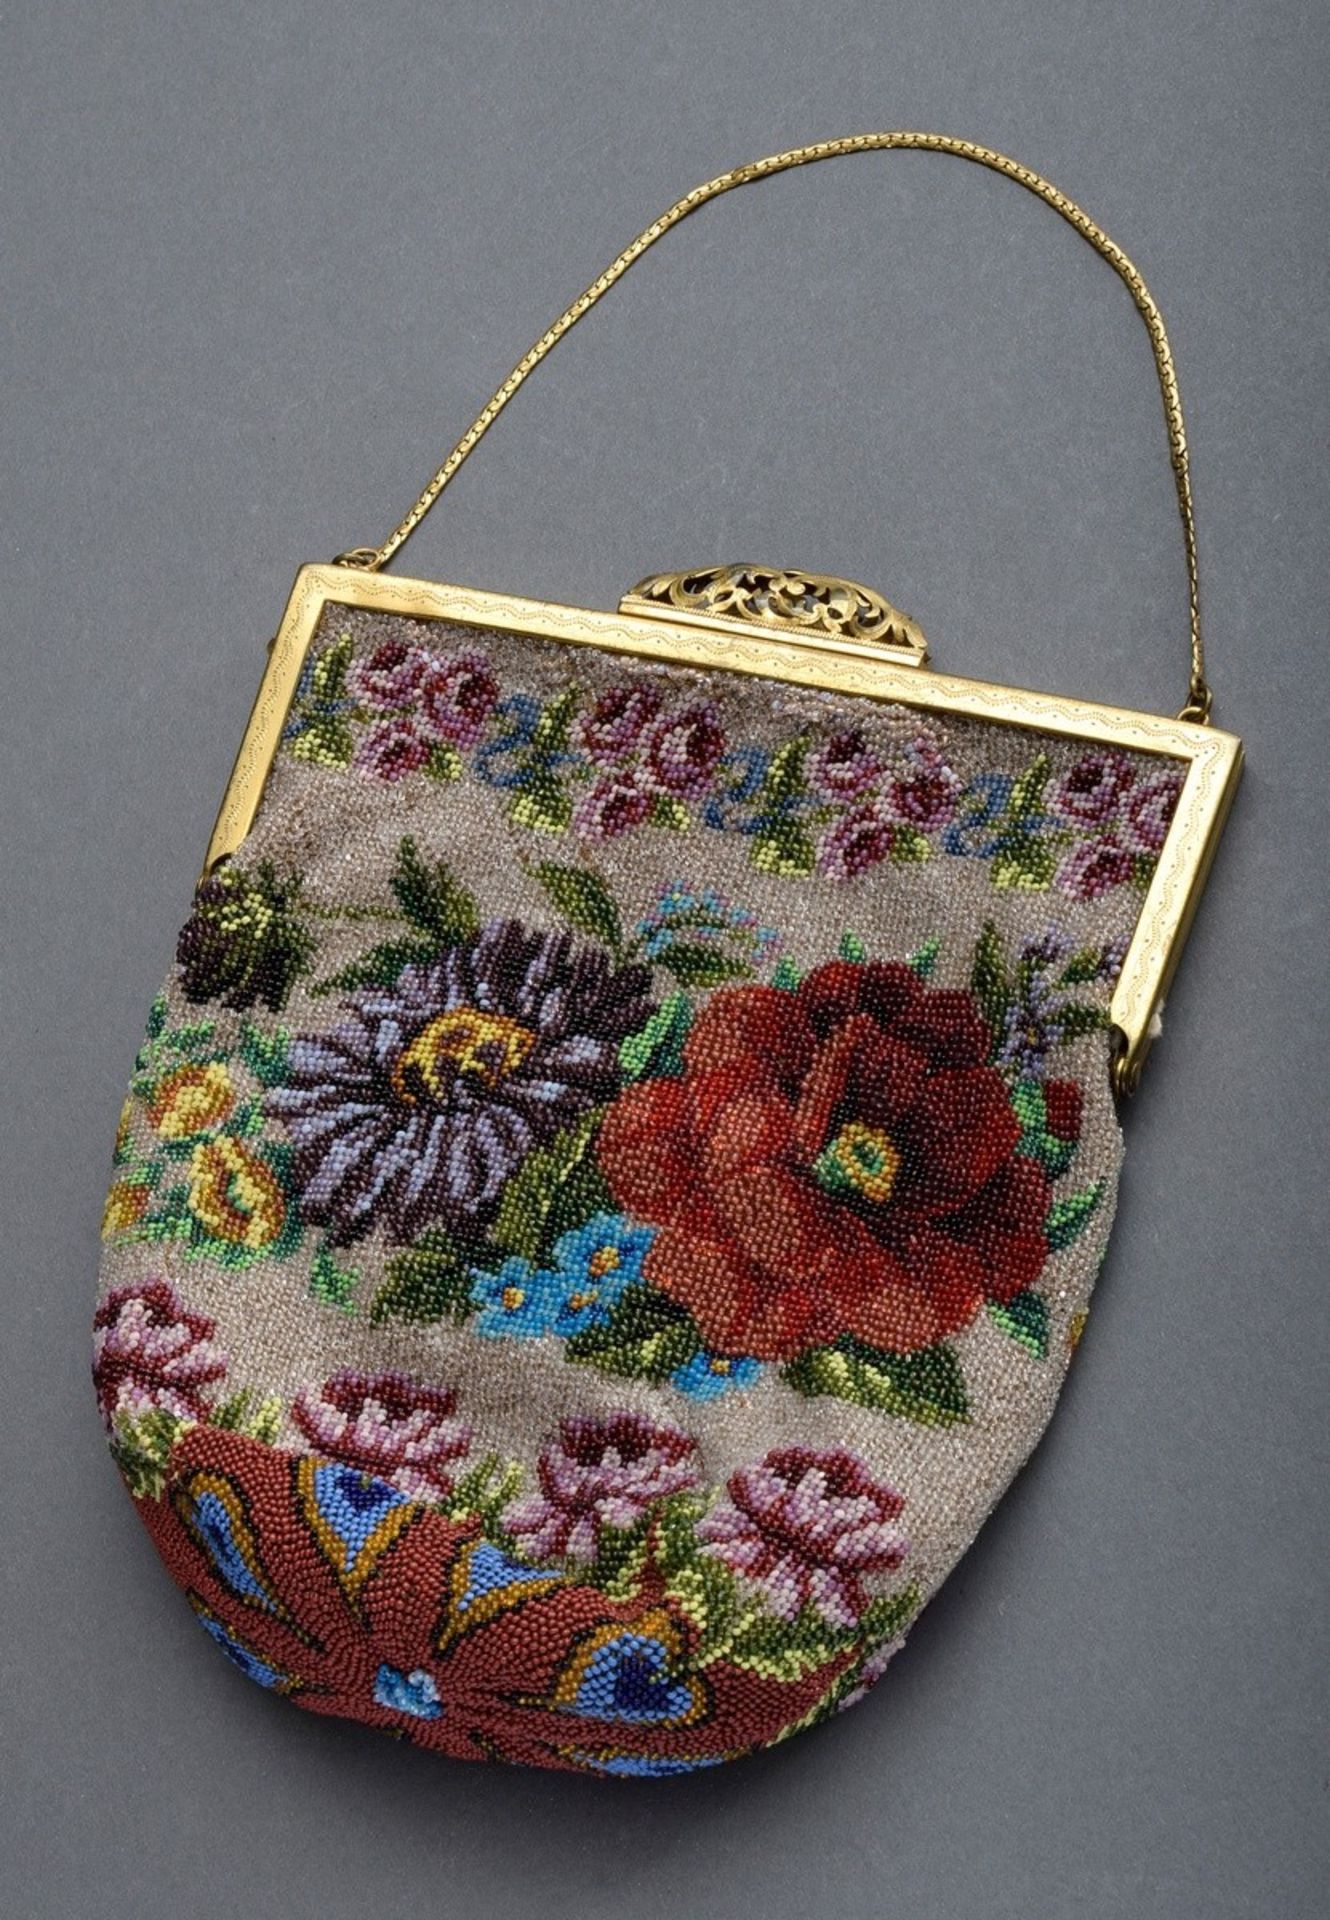 Biedermeier Perlbeutel "Blumenbouquet" an Messin | Biedermeier pearl bag "flower bouquet" on brass